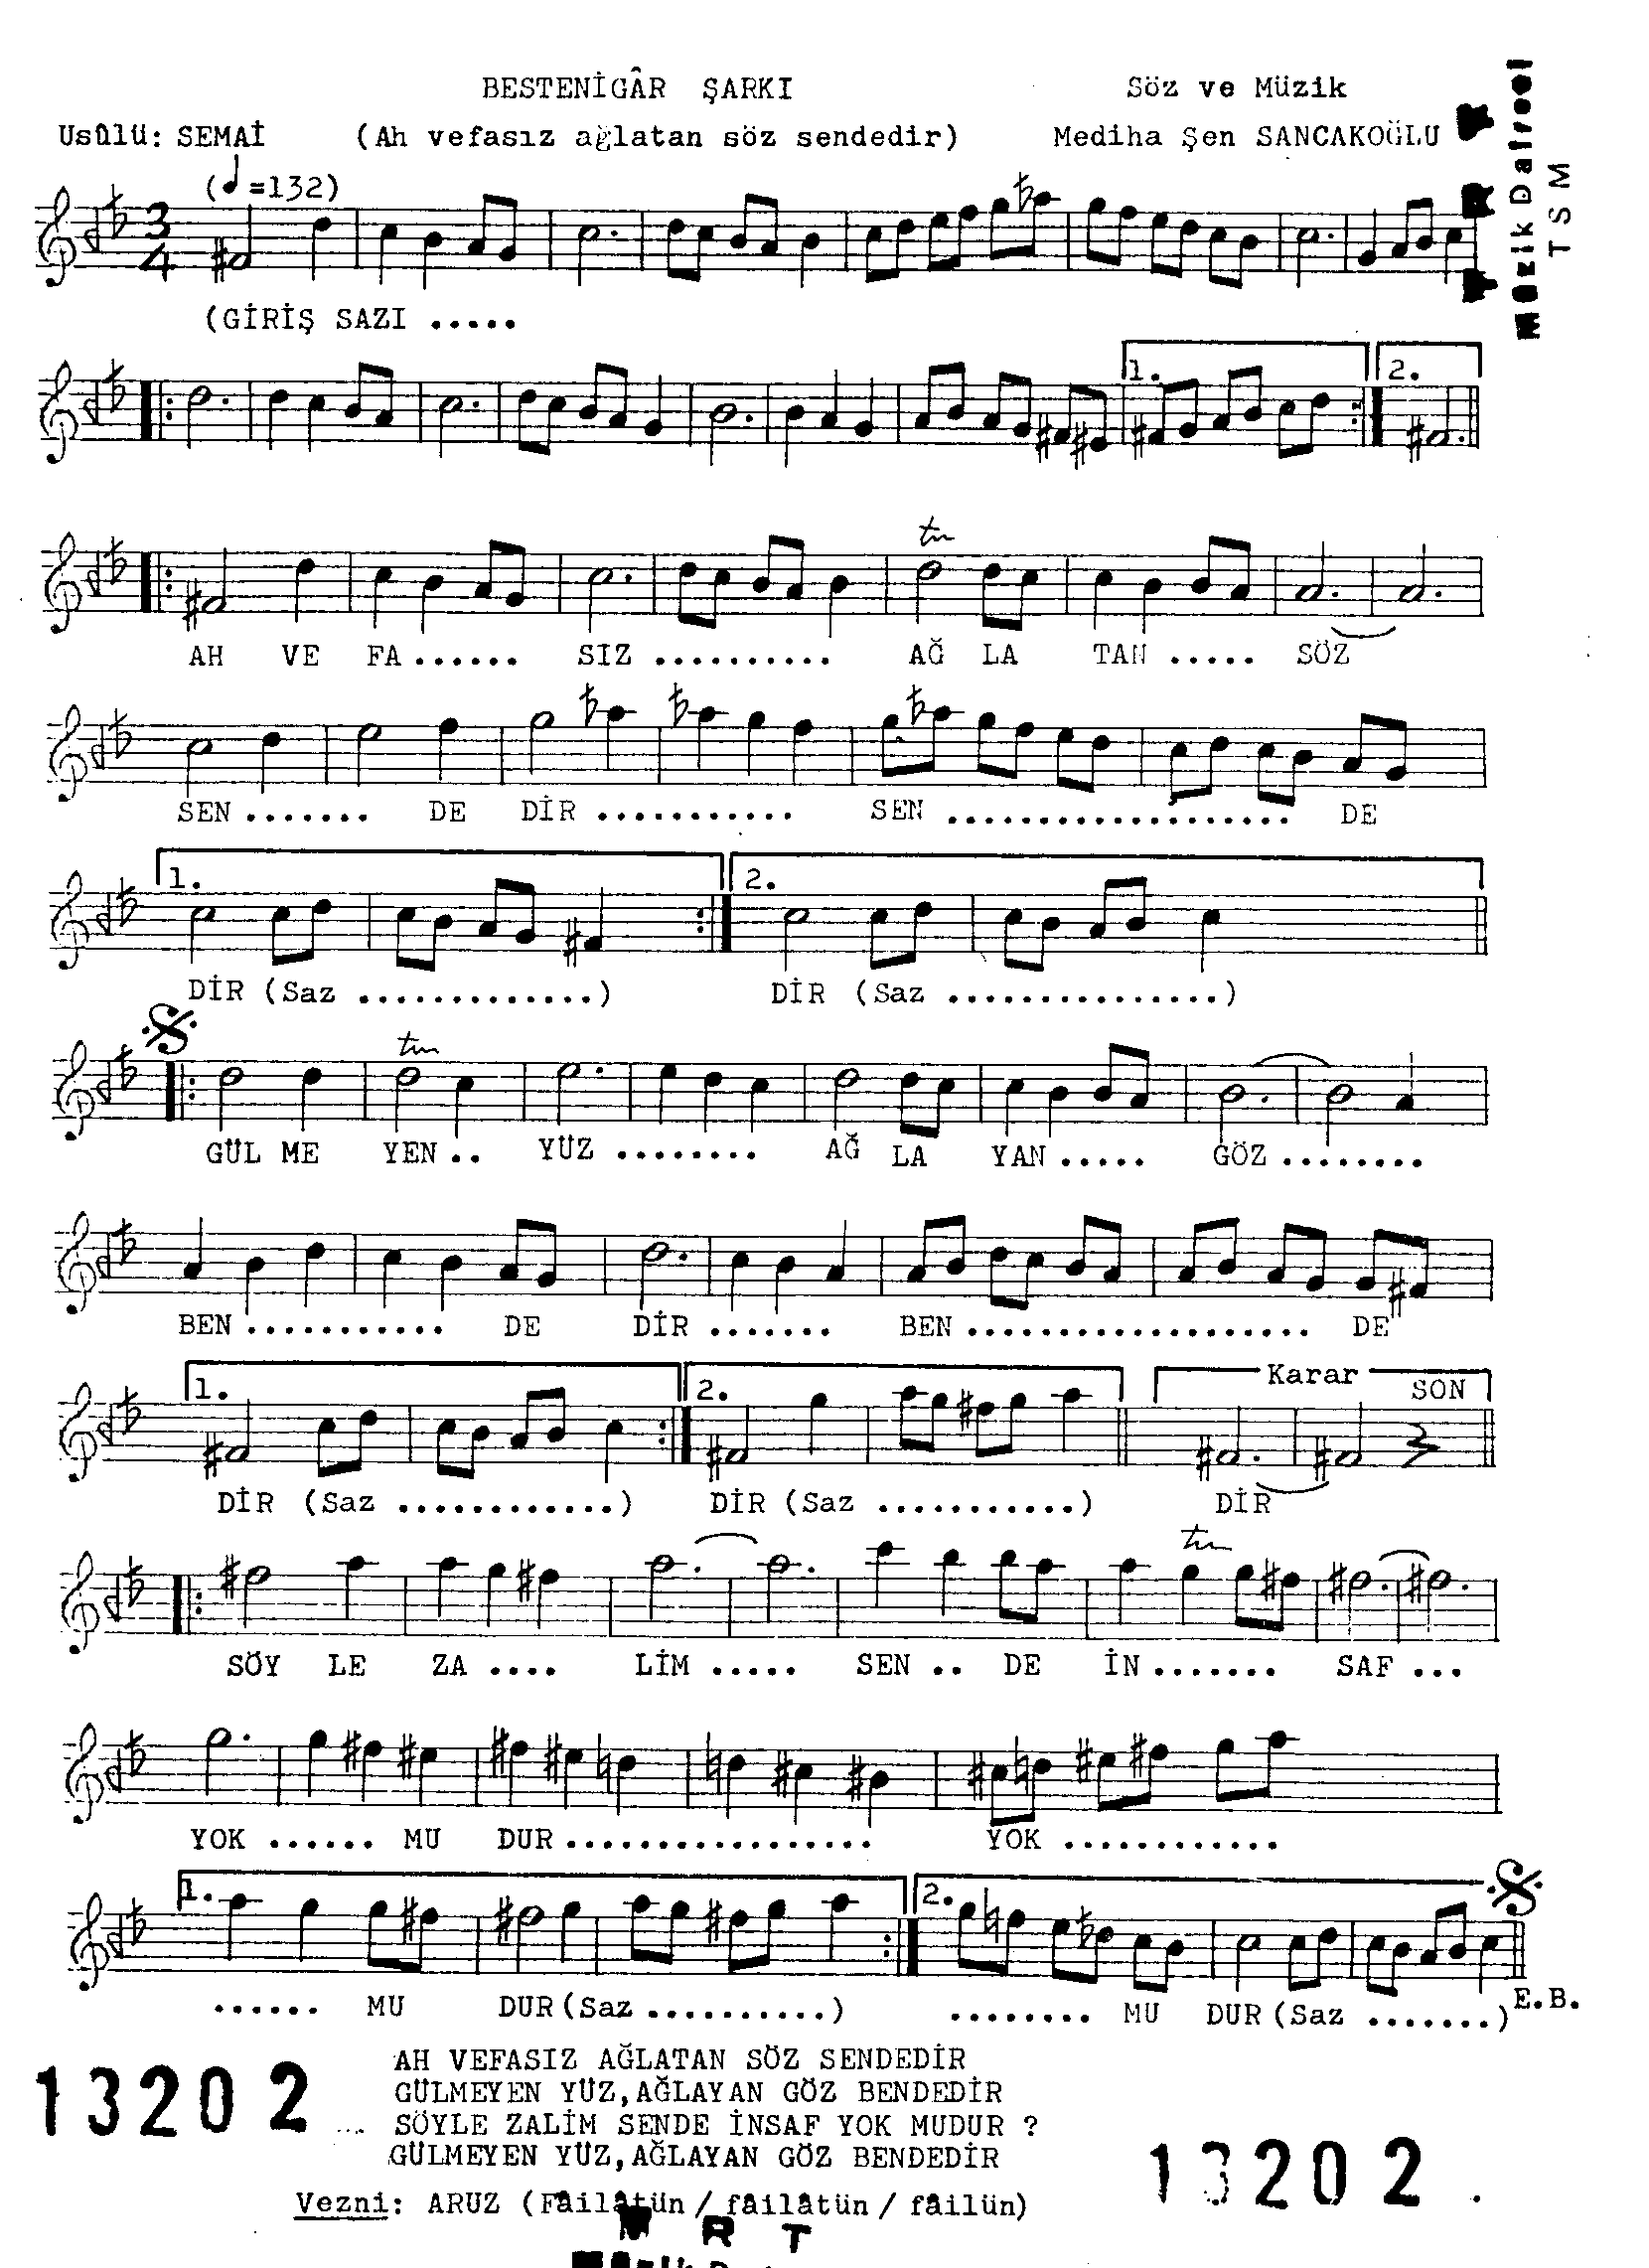 Bestenigâr - Şarkı - Mediha Şen Sancakoğlu - Sayfa 1